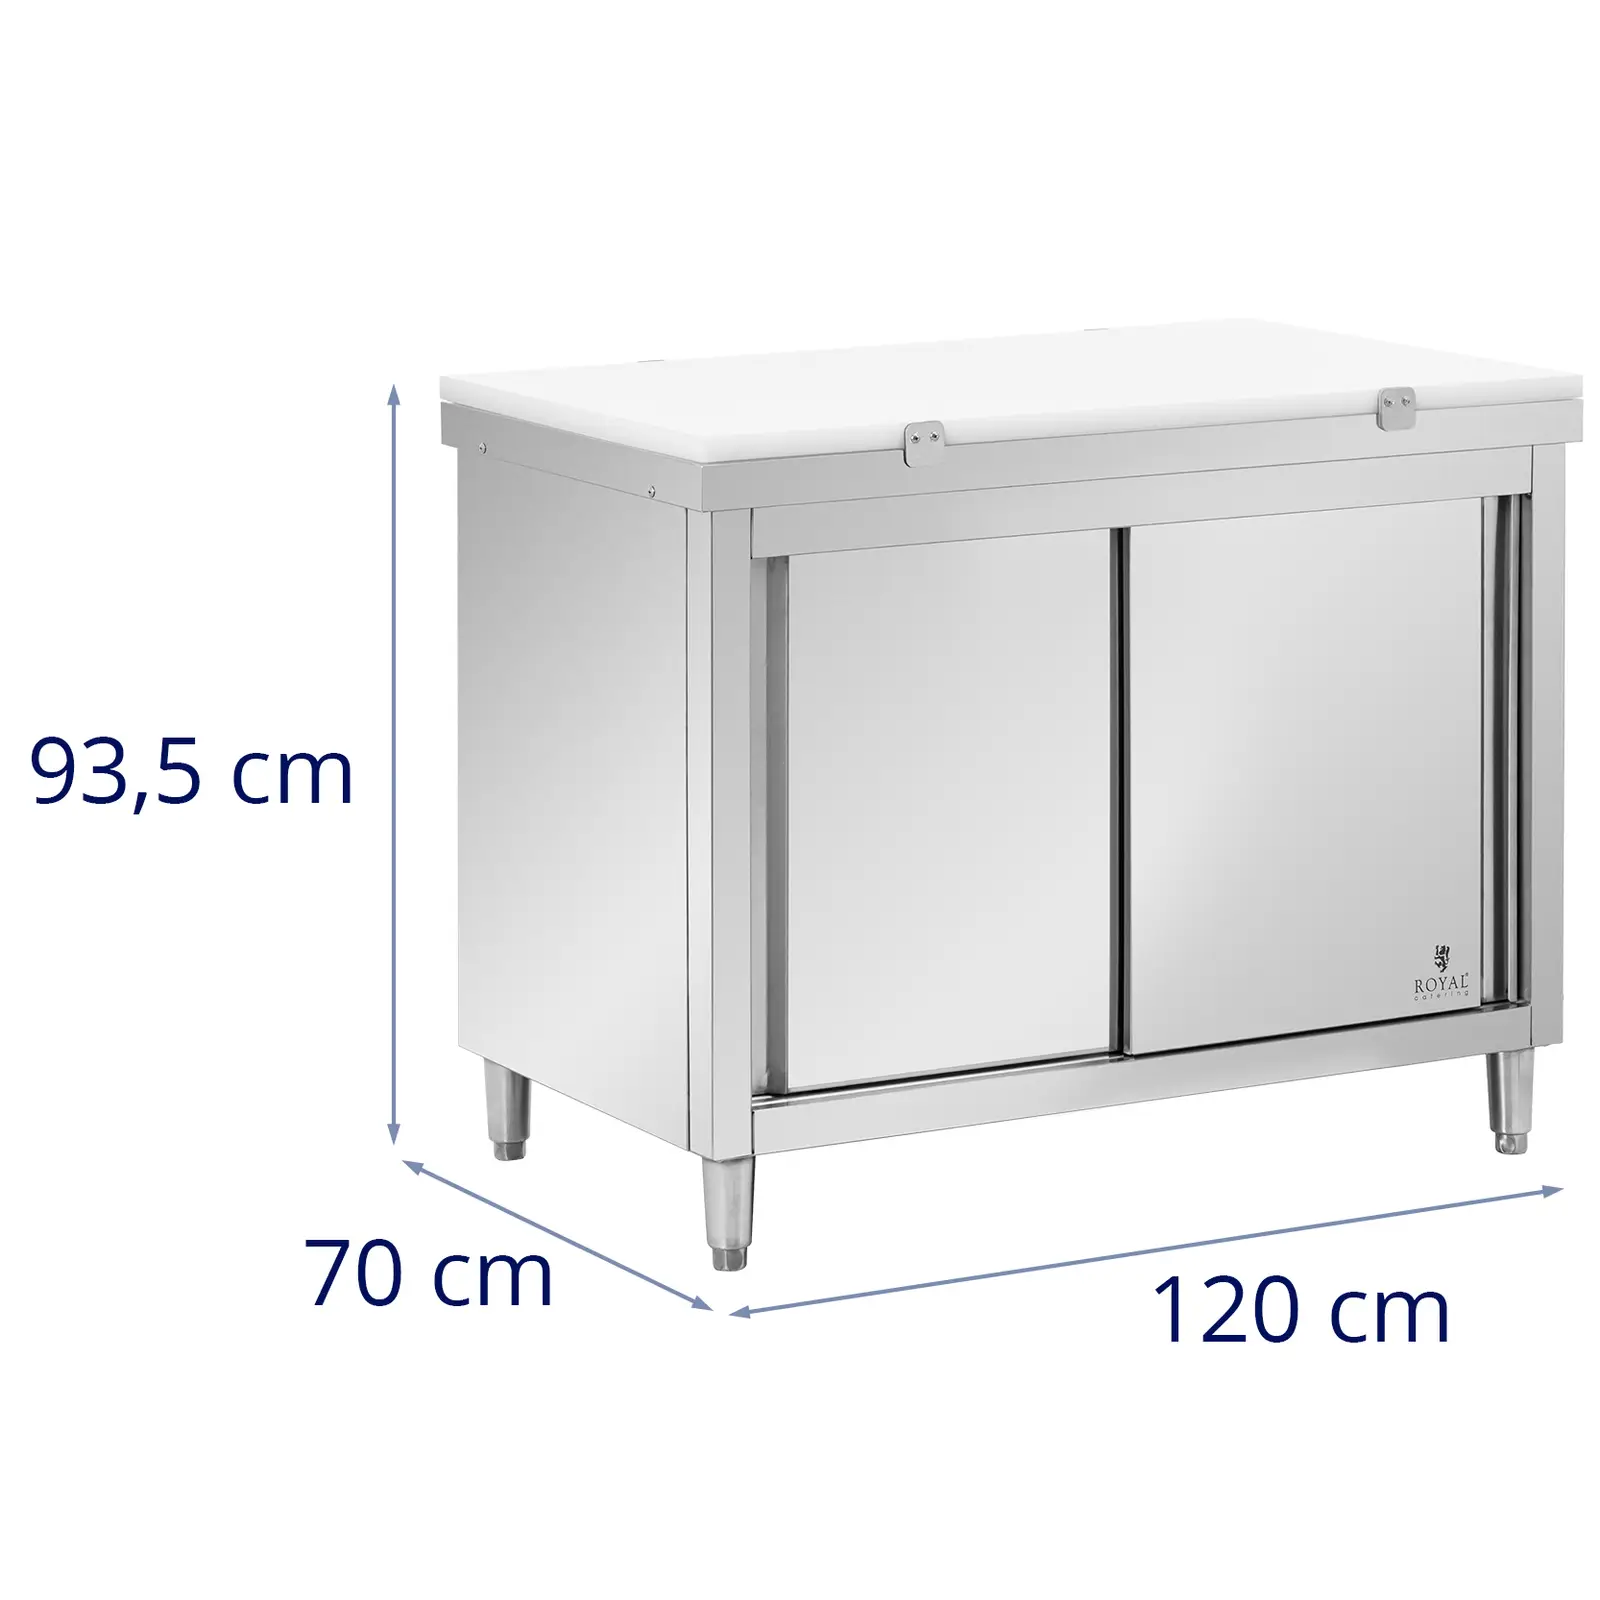 Rozsdamentes acél munkaszekrény - 120 x 70 cm - 500 kg terhelhetőség - tartalmazza Vágódeszka - Royal Catering